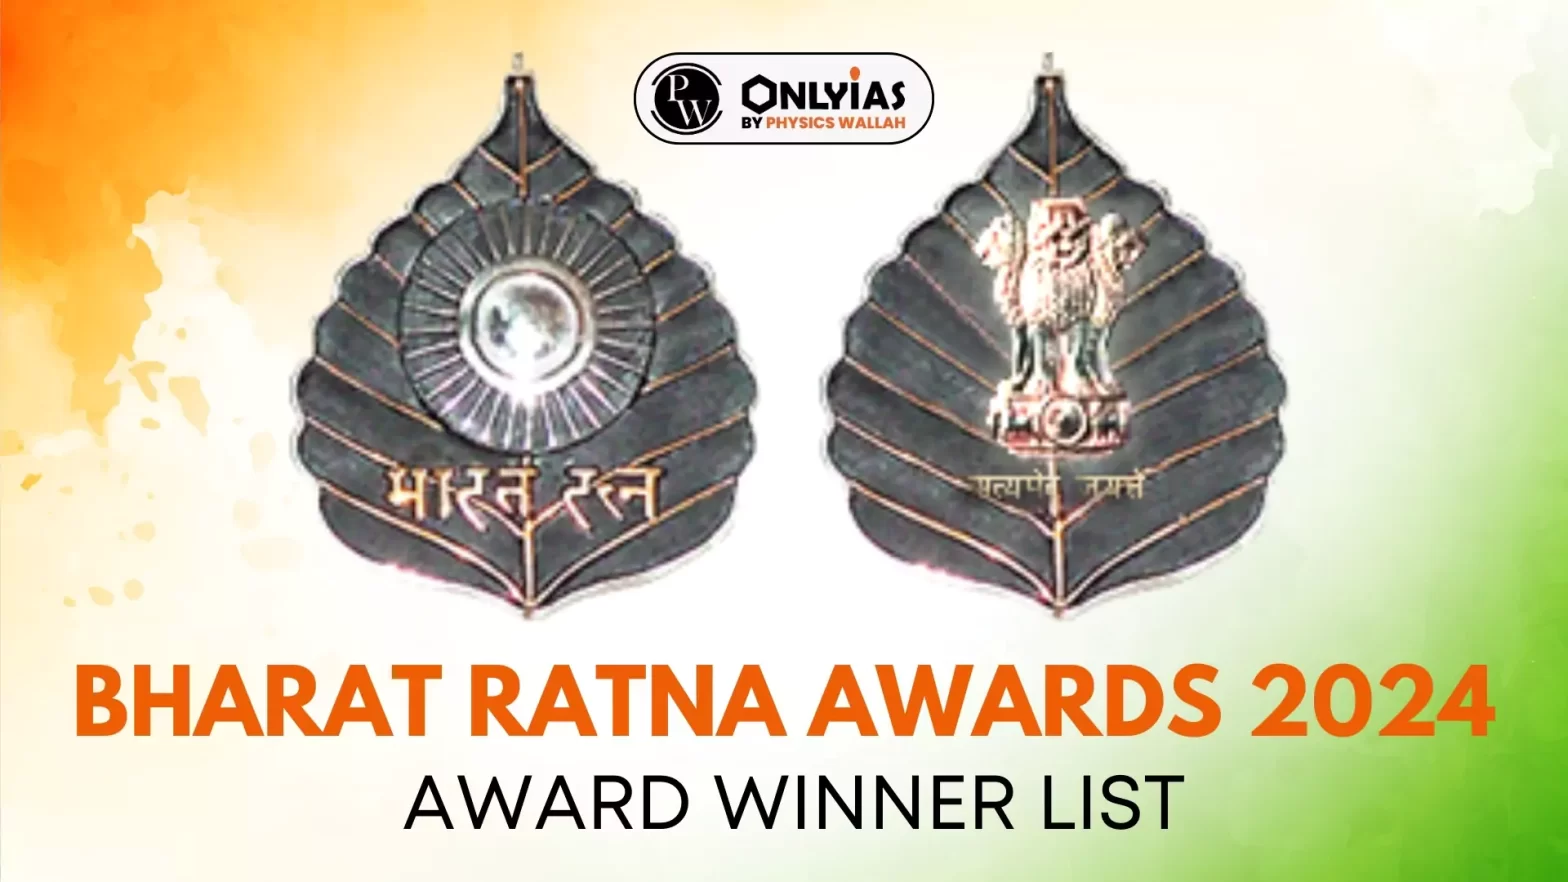 Bharat Ratna Awards 2024: Award Winner List